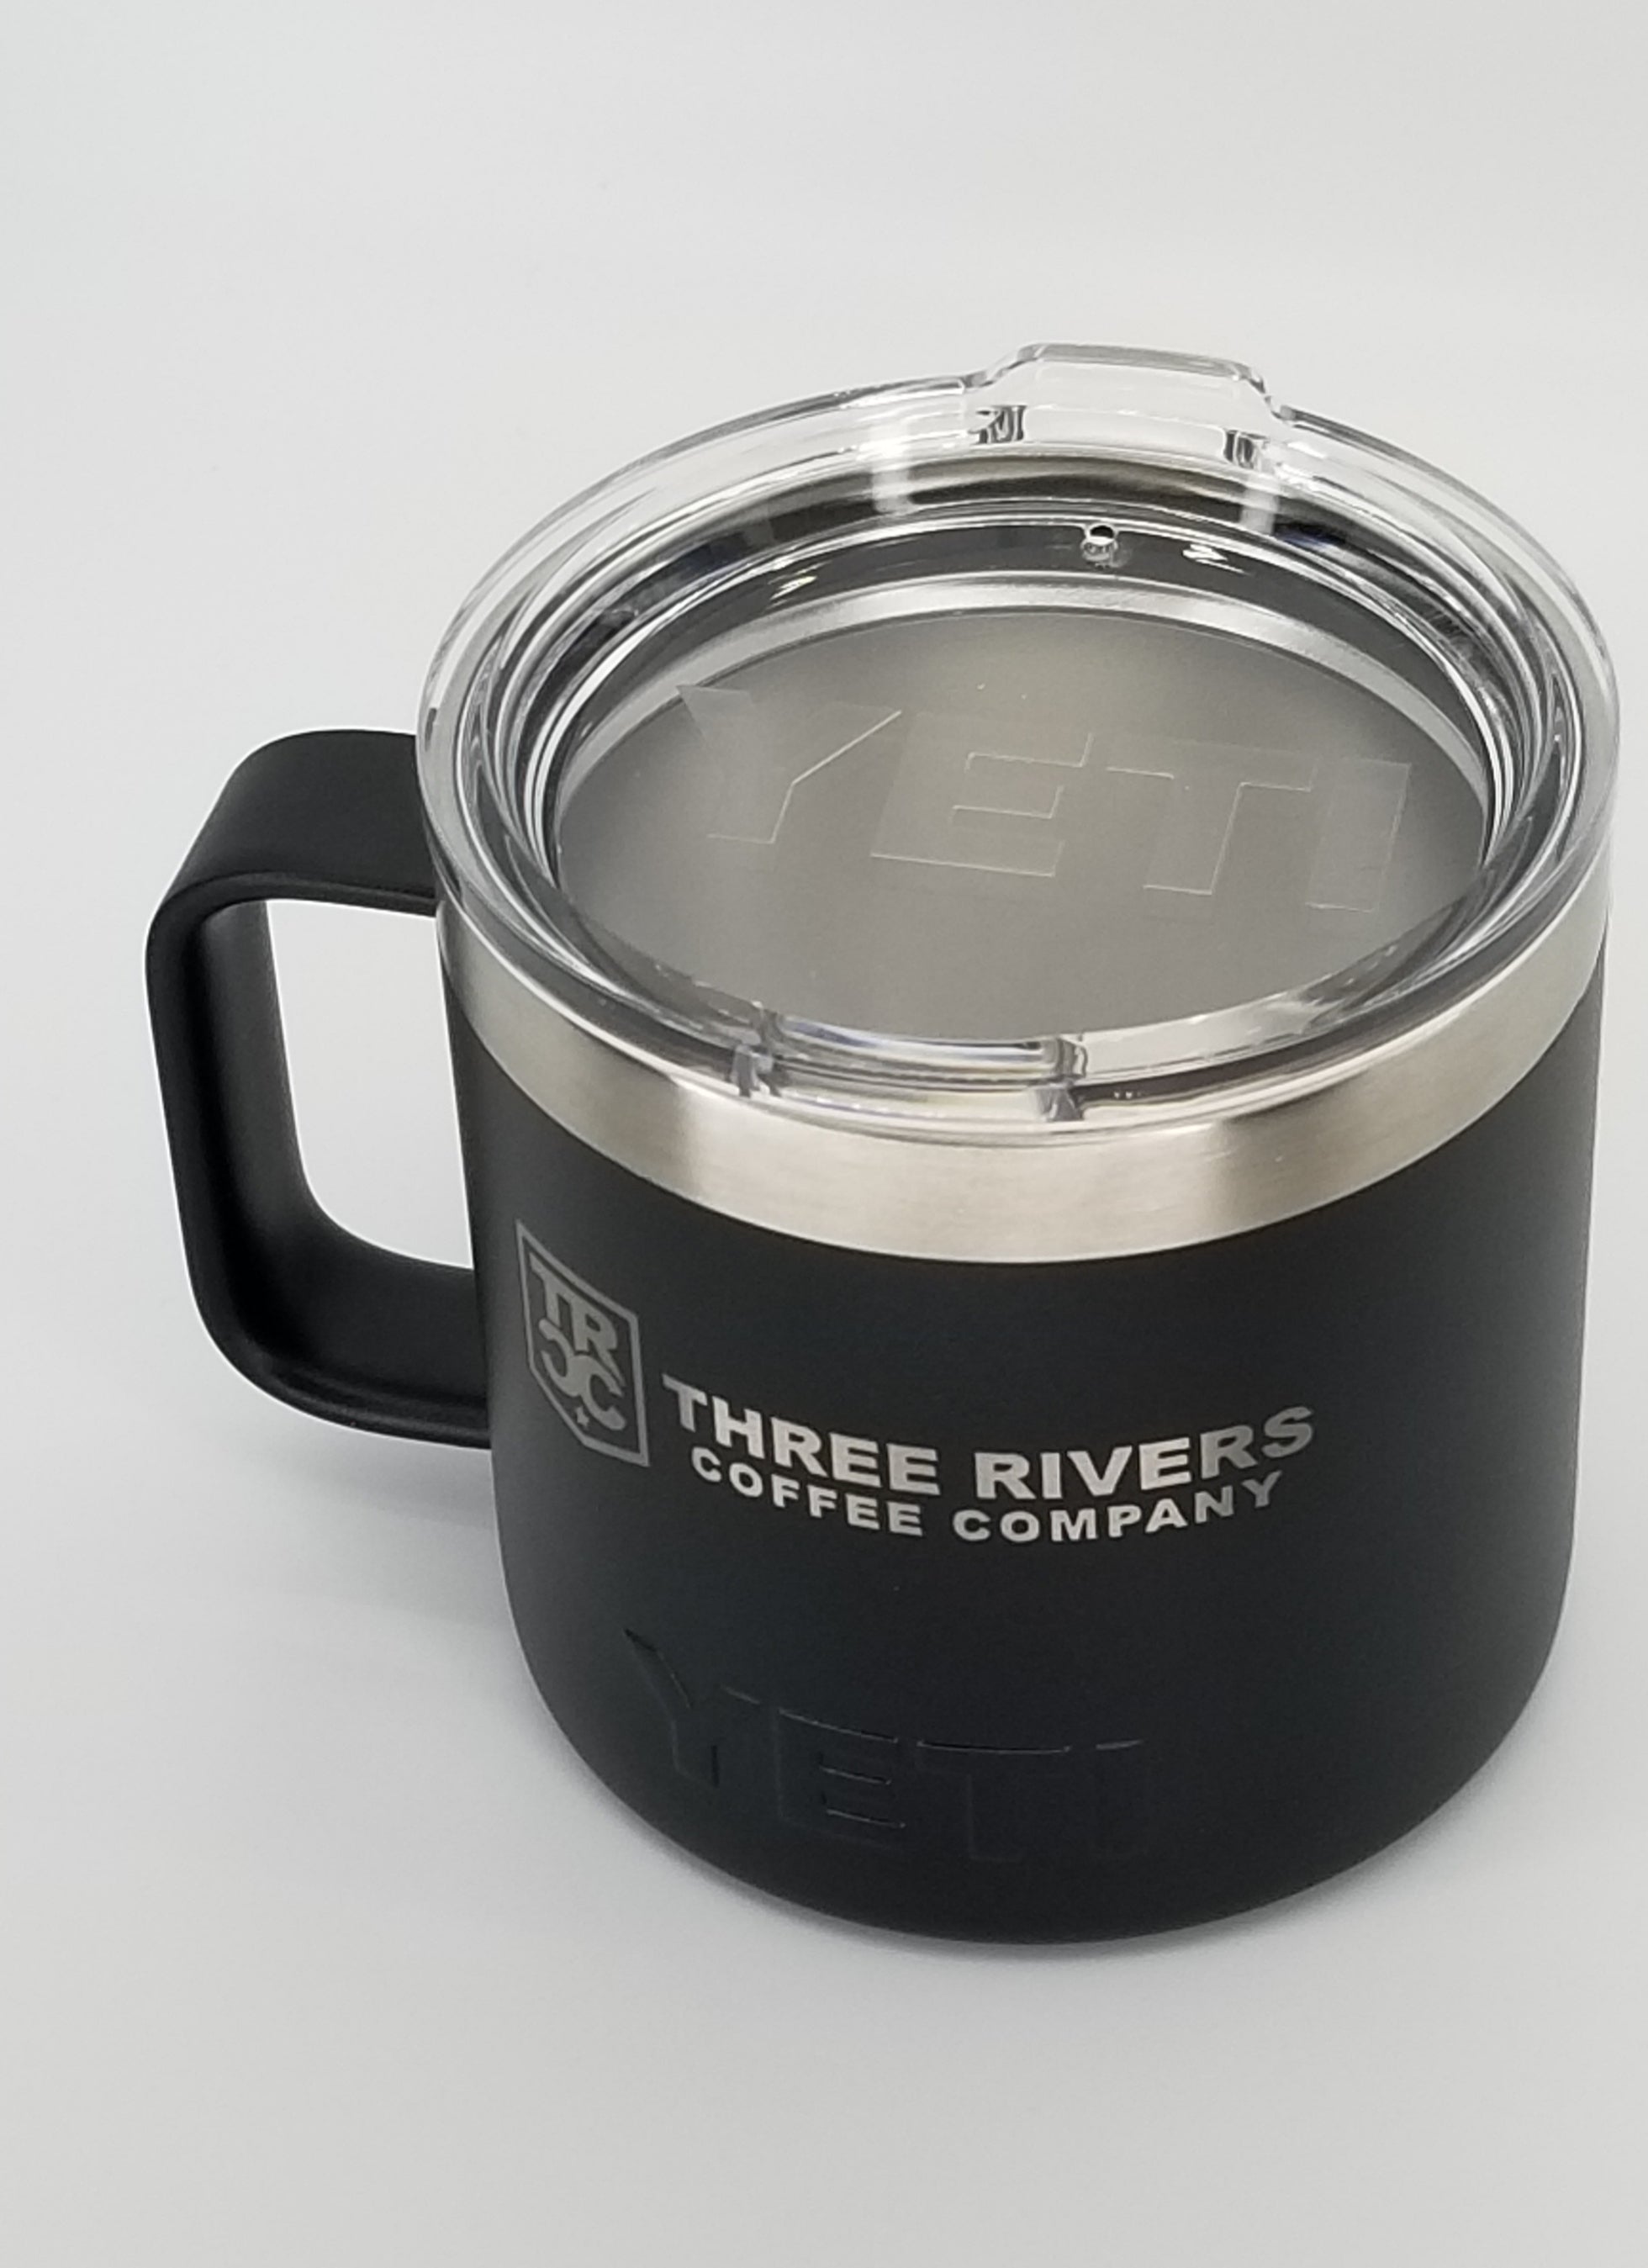 Yeti Rambler 14oz Coffee Mug/Camping Mug Review! 